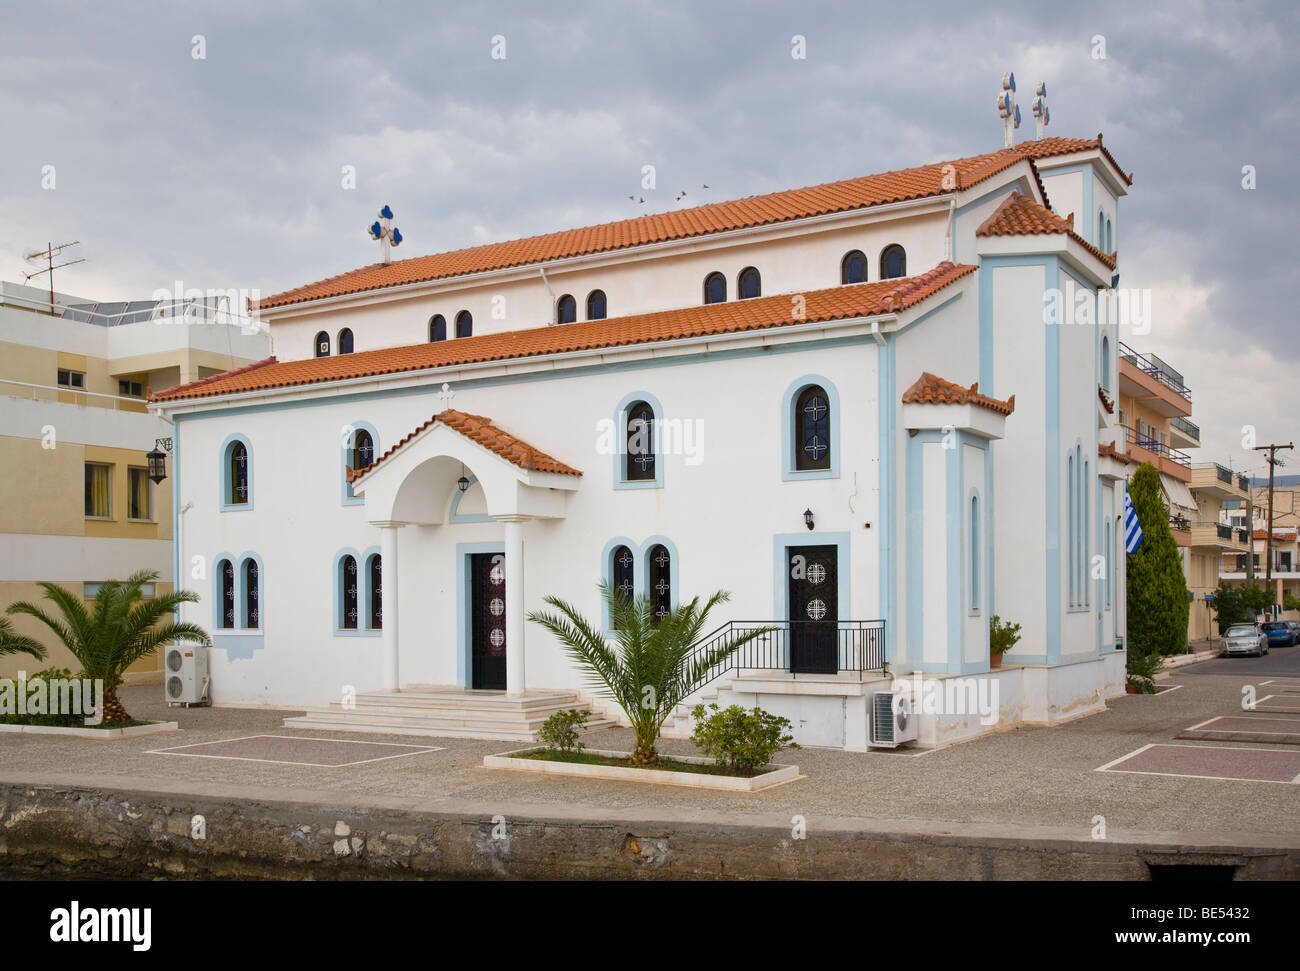 Itea Greece Church of Evag-Theotokou Stock Photo